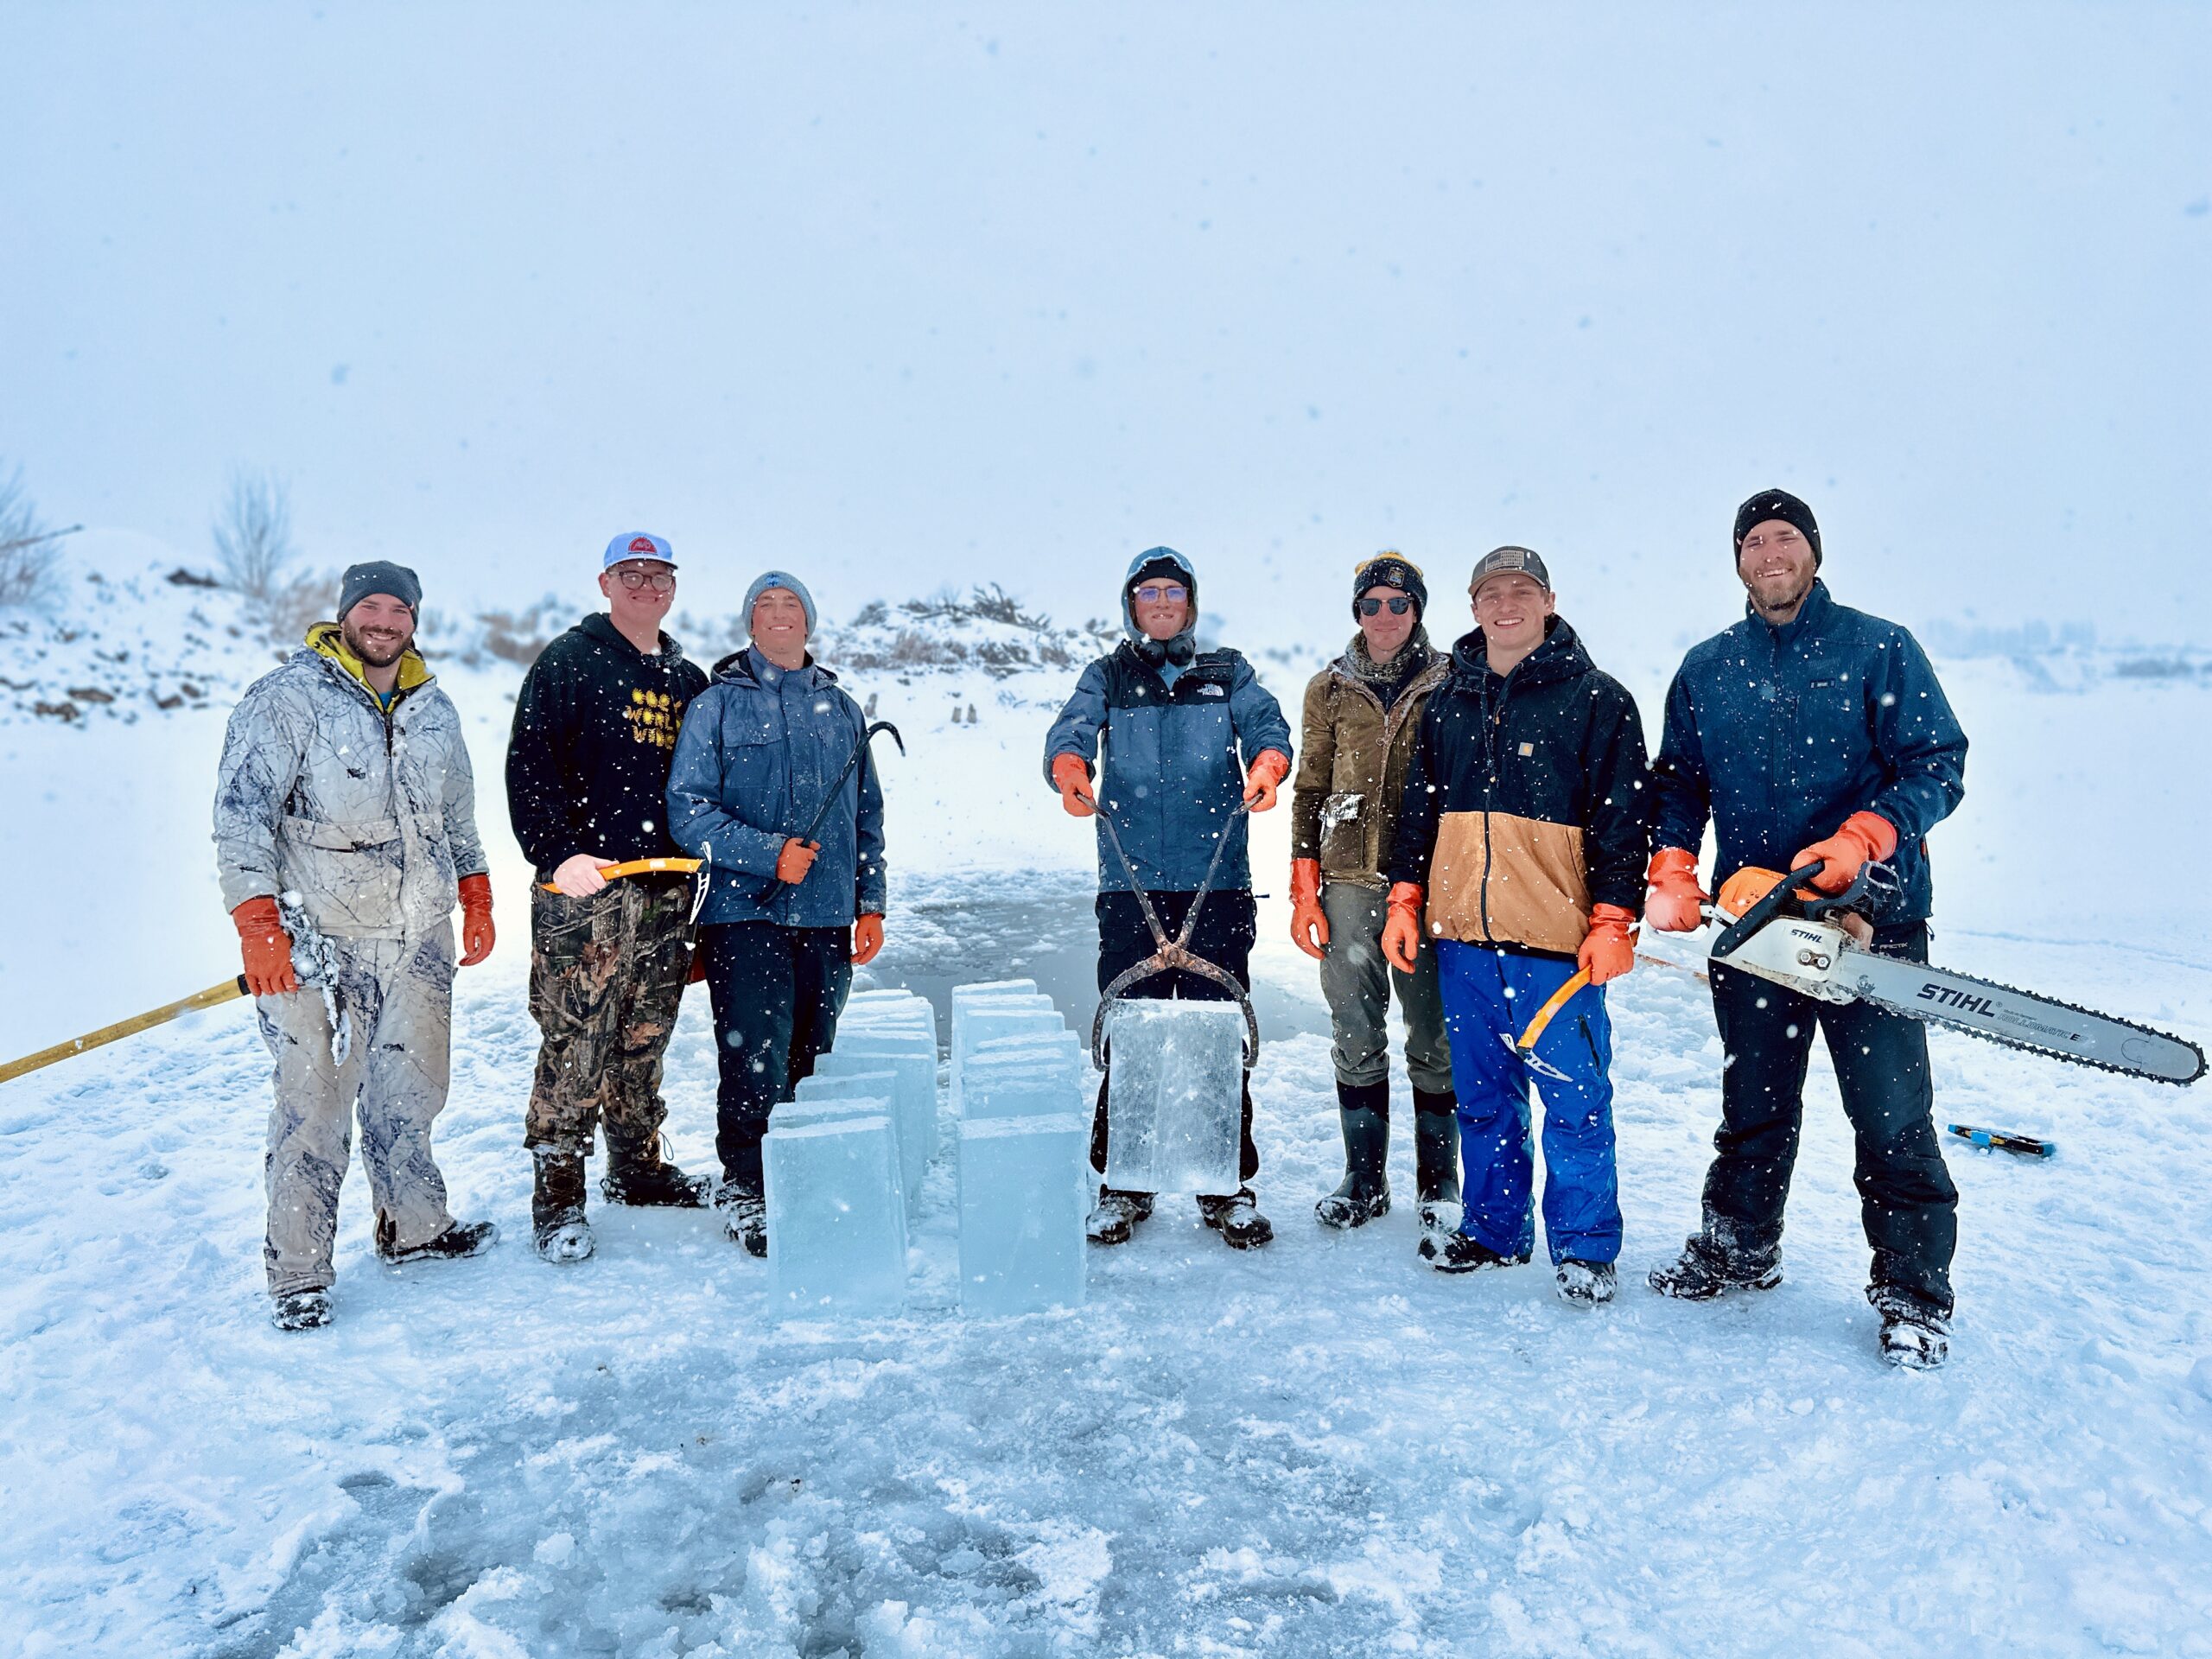 The Ice Palace Minnesota team harvesting ice.